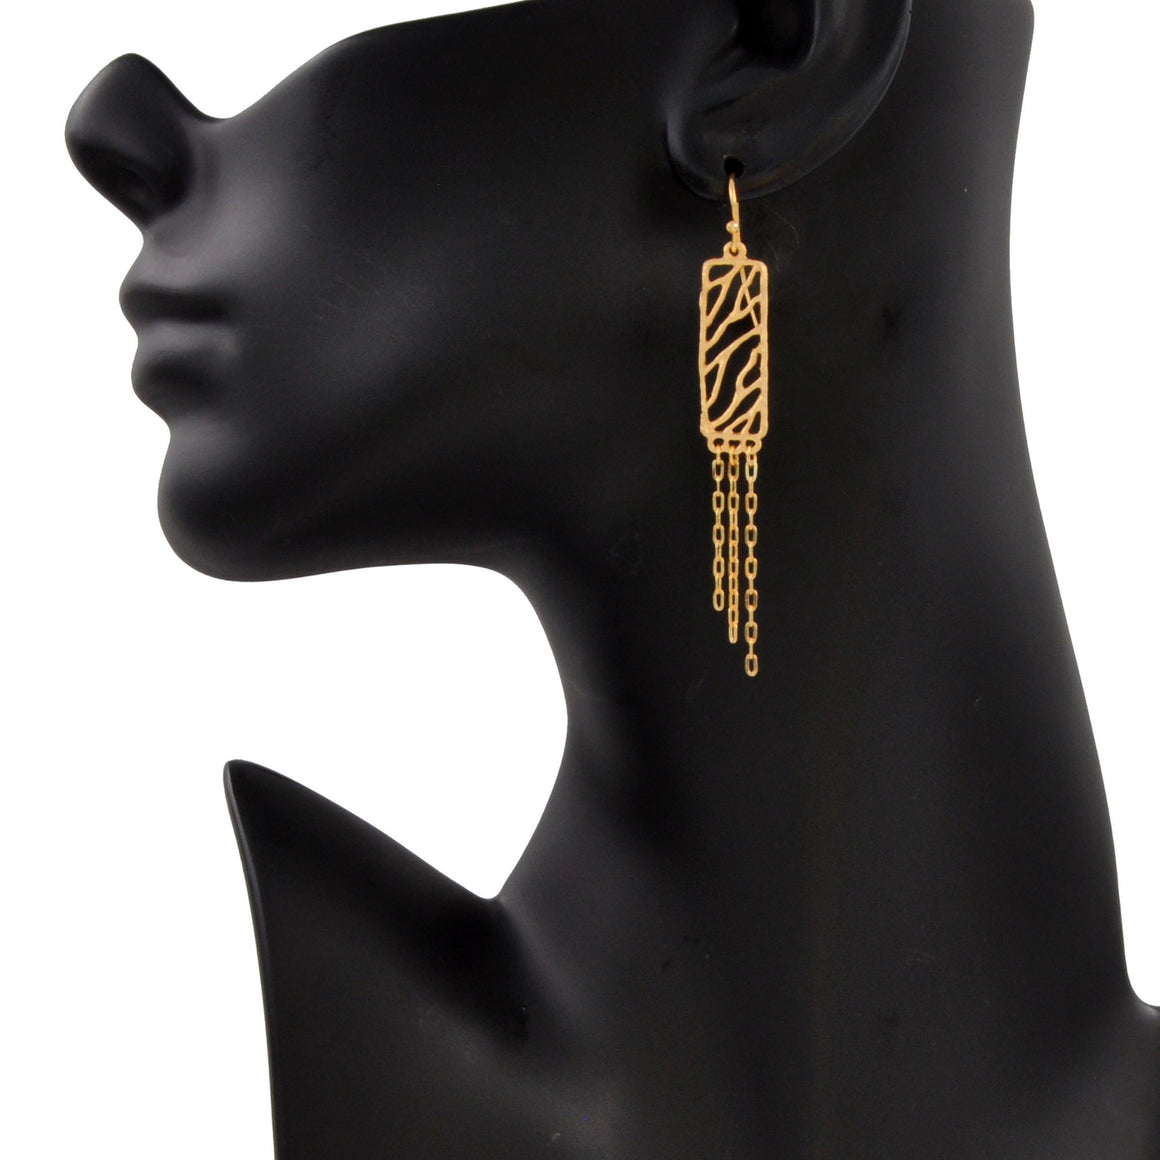 Glamorous Fringe Rectangle Earrings - 24K Gold Plated